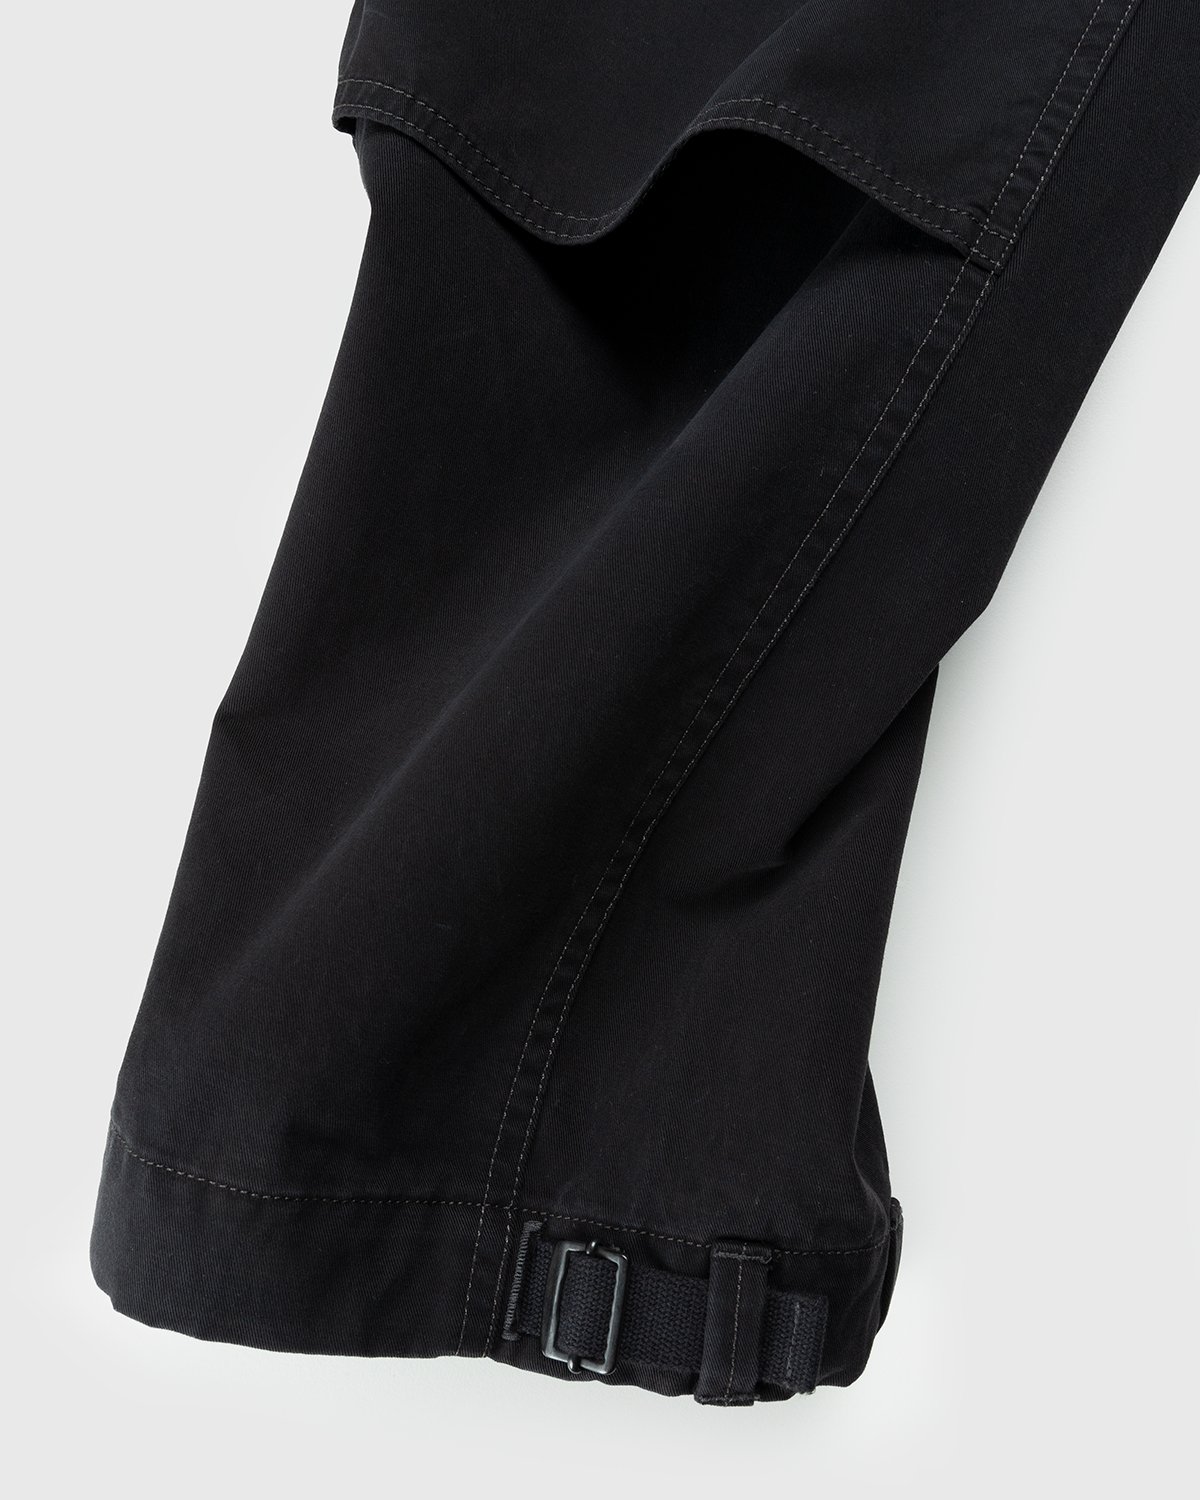 Lemaire - Utility Pants Black - Clothing - Black - Image 5